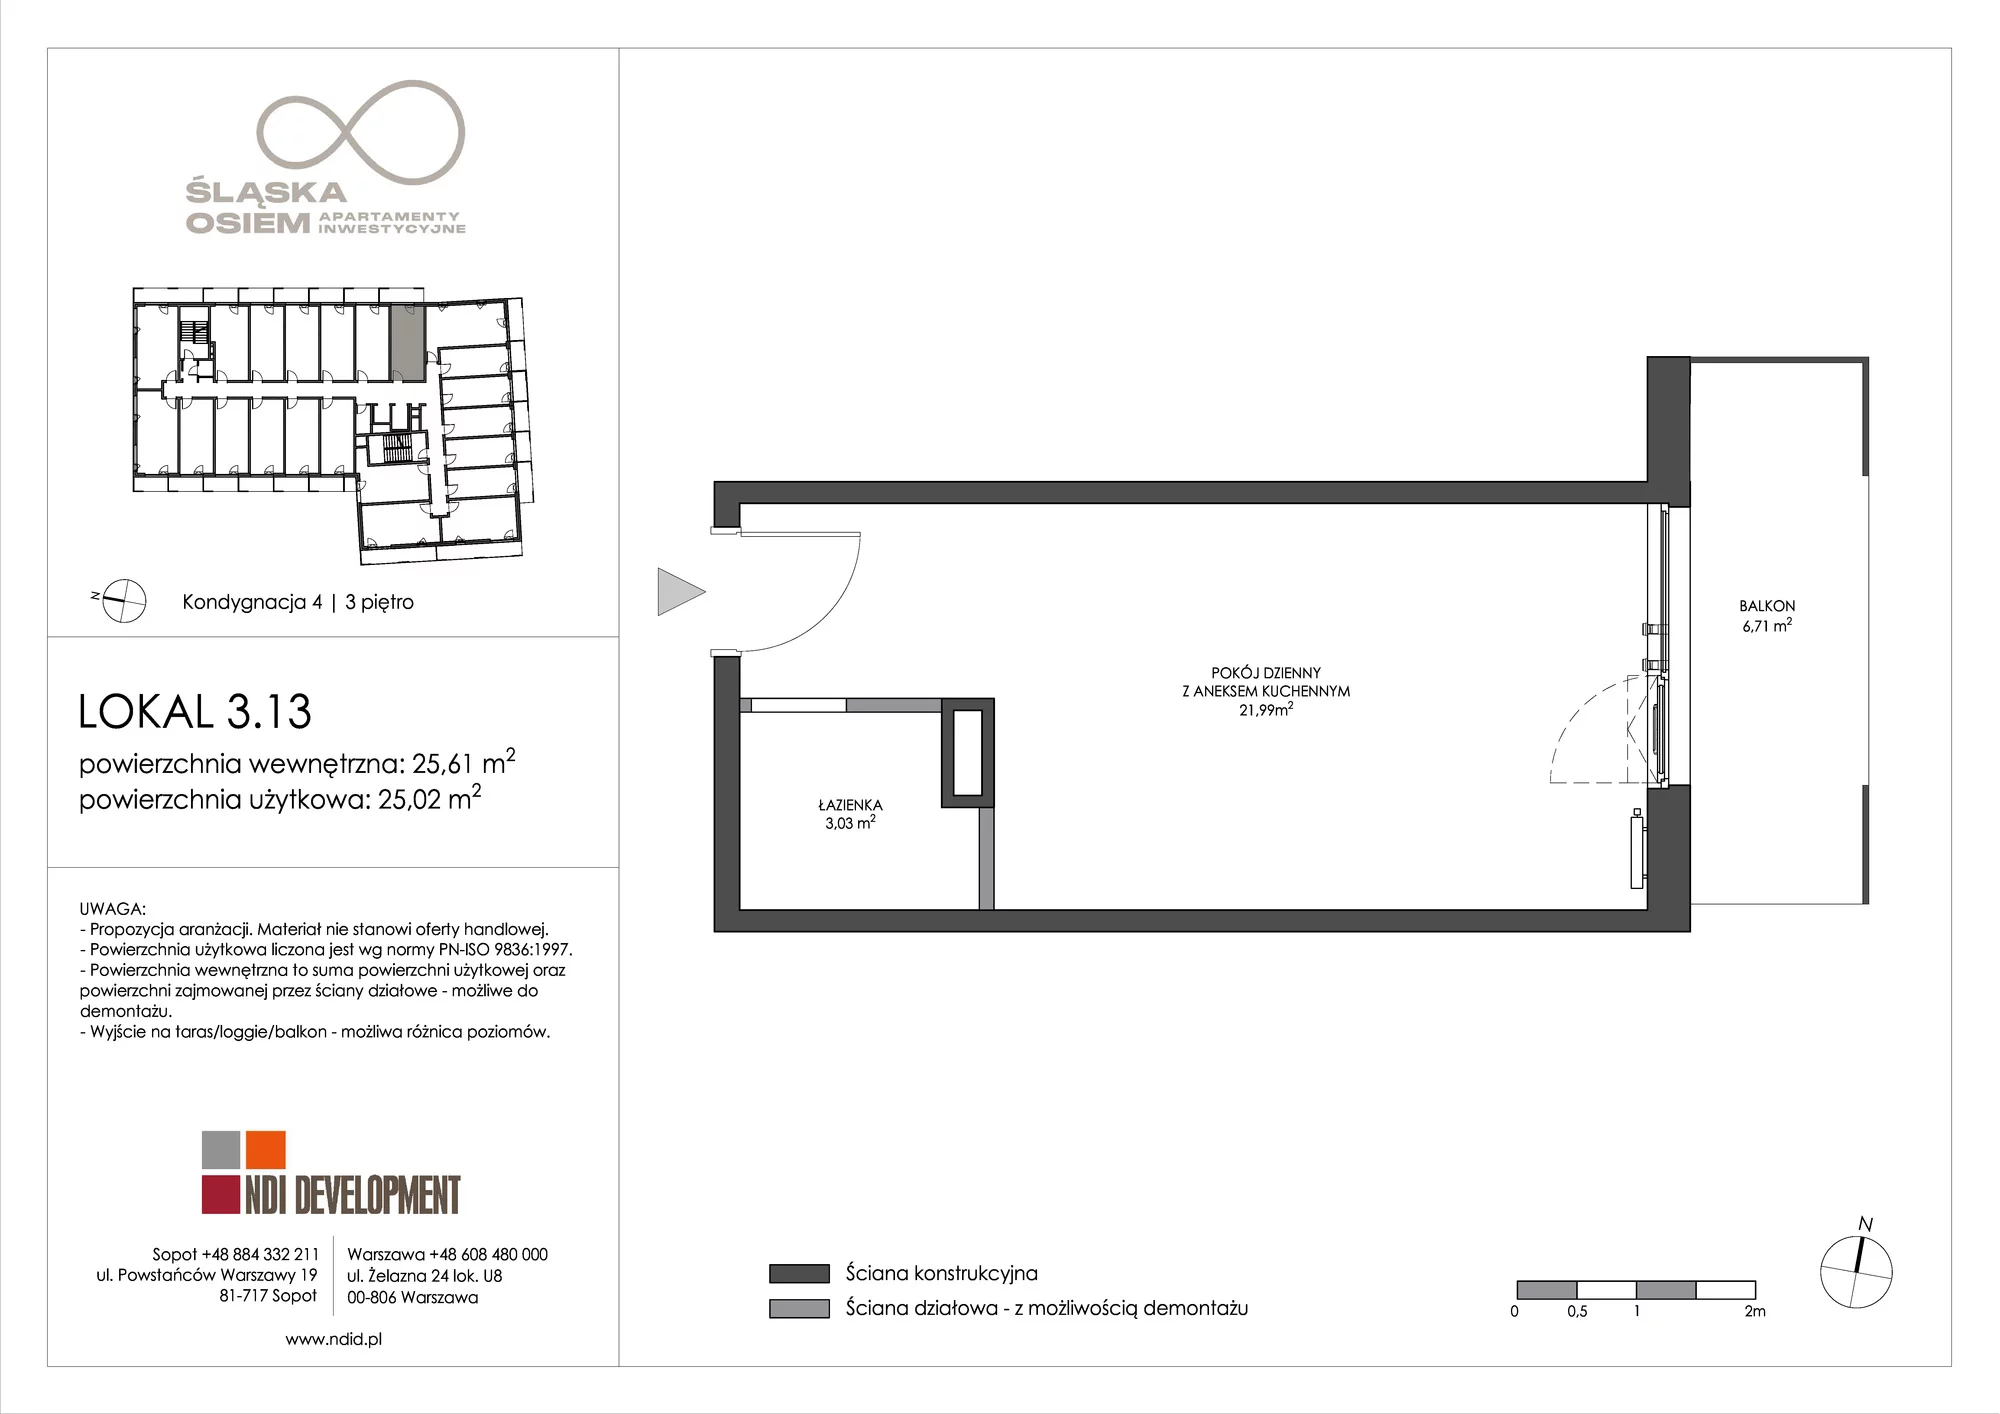 Apartament inwestycyjny 25,61 m², piętro 3, oferta nr 3.13, Śląska Osiem, Gdańsk, Przymorze, ul. Śląska 8